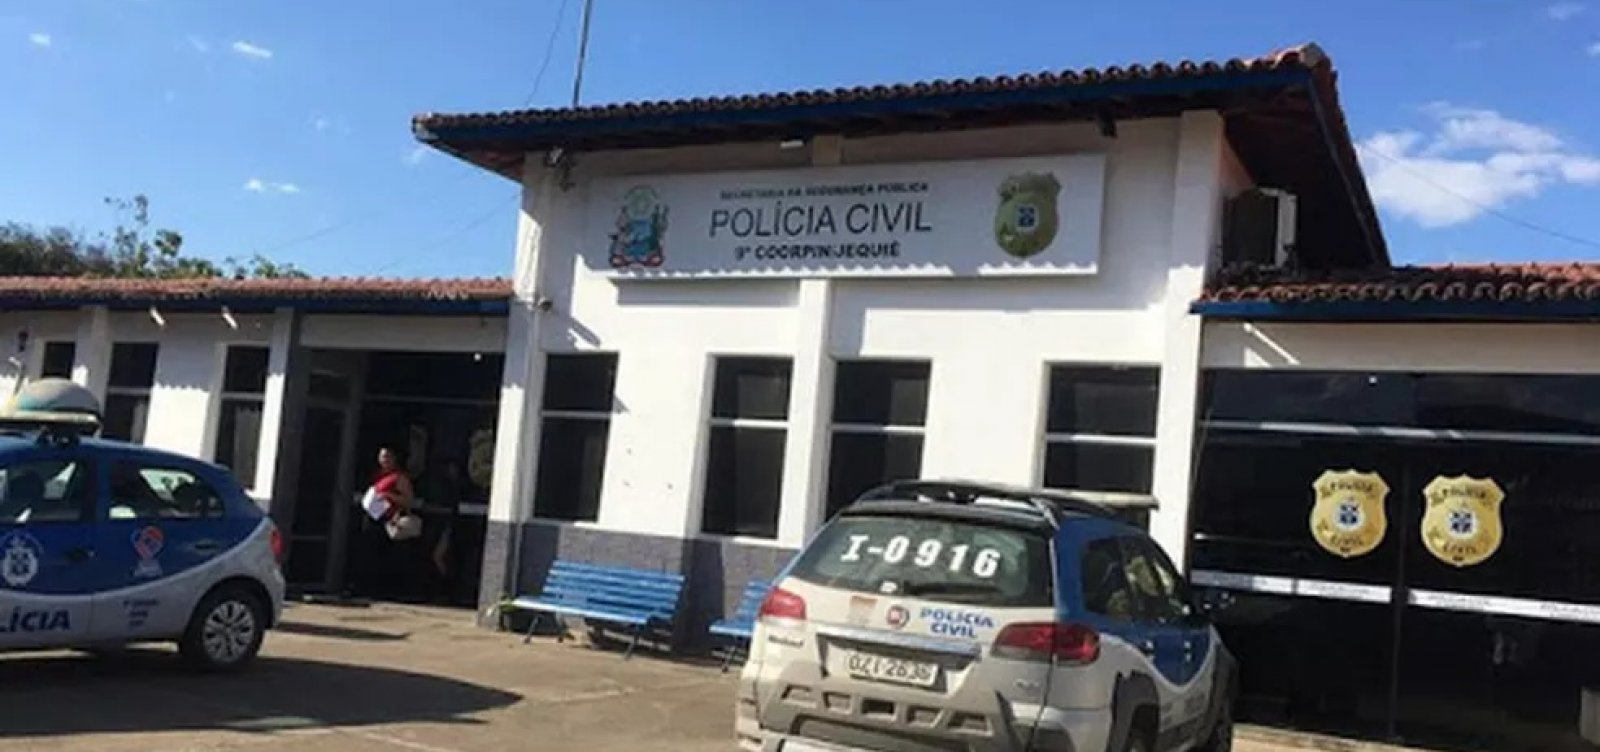 Dois homens foram mortos a tiros em feira livre no interior da Bahia 